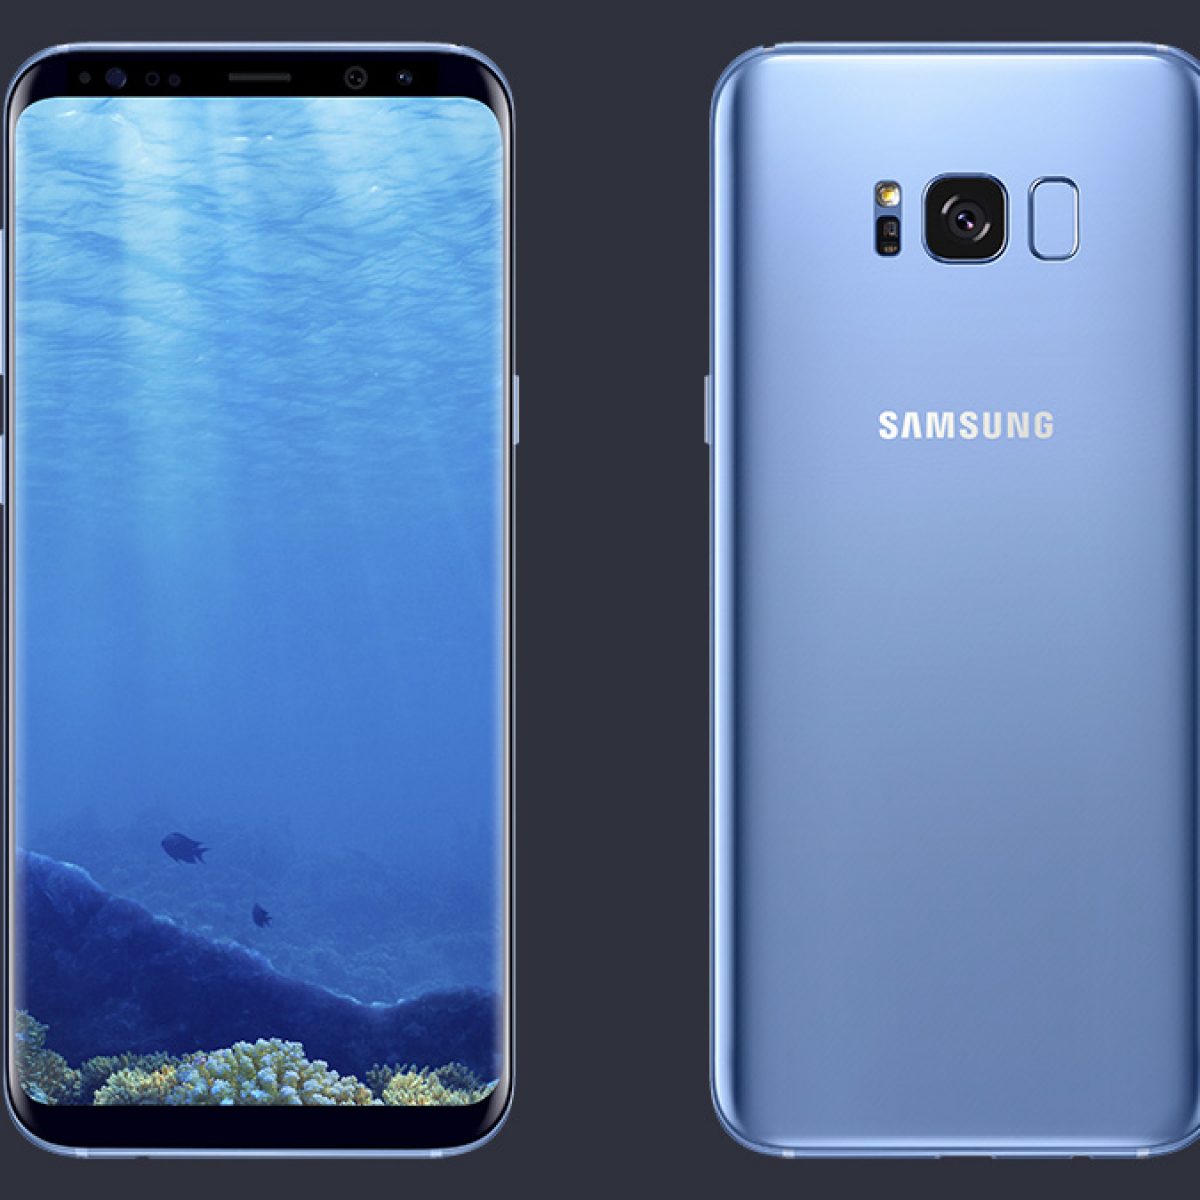 Самсунг 8 спб. Samsung Galaxy s8. Samsung Galaxy s8 Blue. Самсунг галакси с 8. Samsung Galaxy s8 синий.